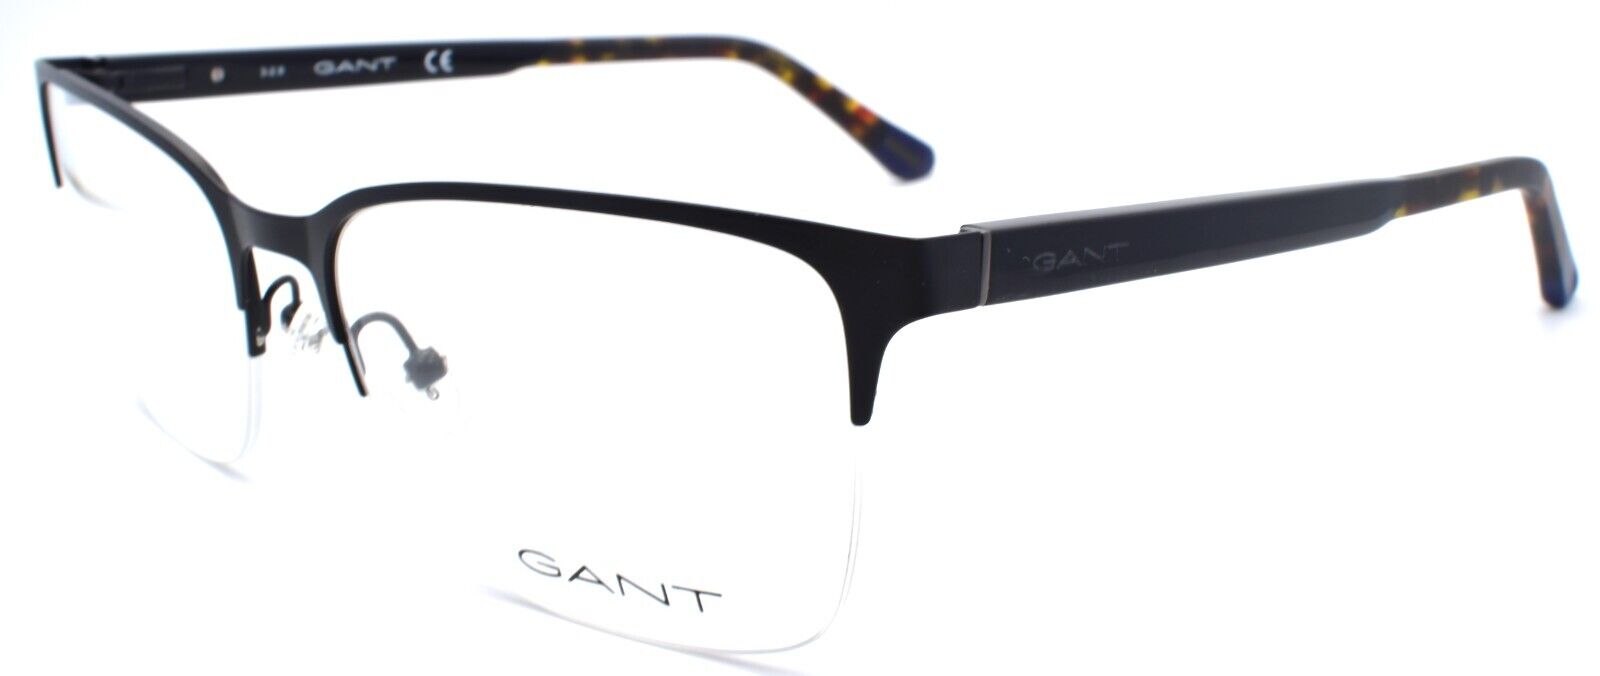 1-GANT GA3202 002 Men's Eyeglasses Frames Half-rim Large 58-18-150 Matte Black-889214125866-IKSpecs